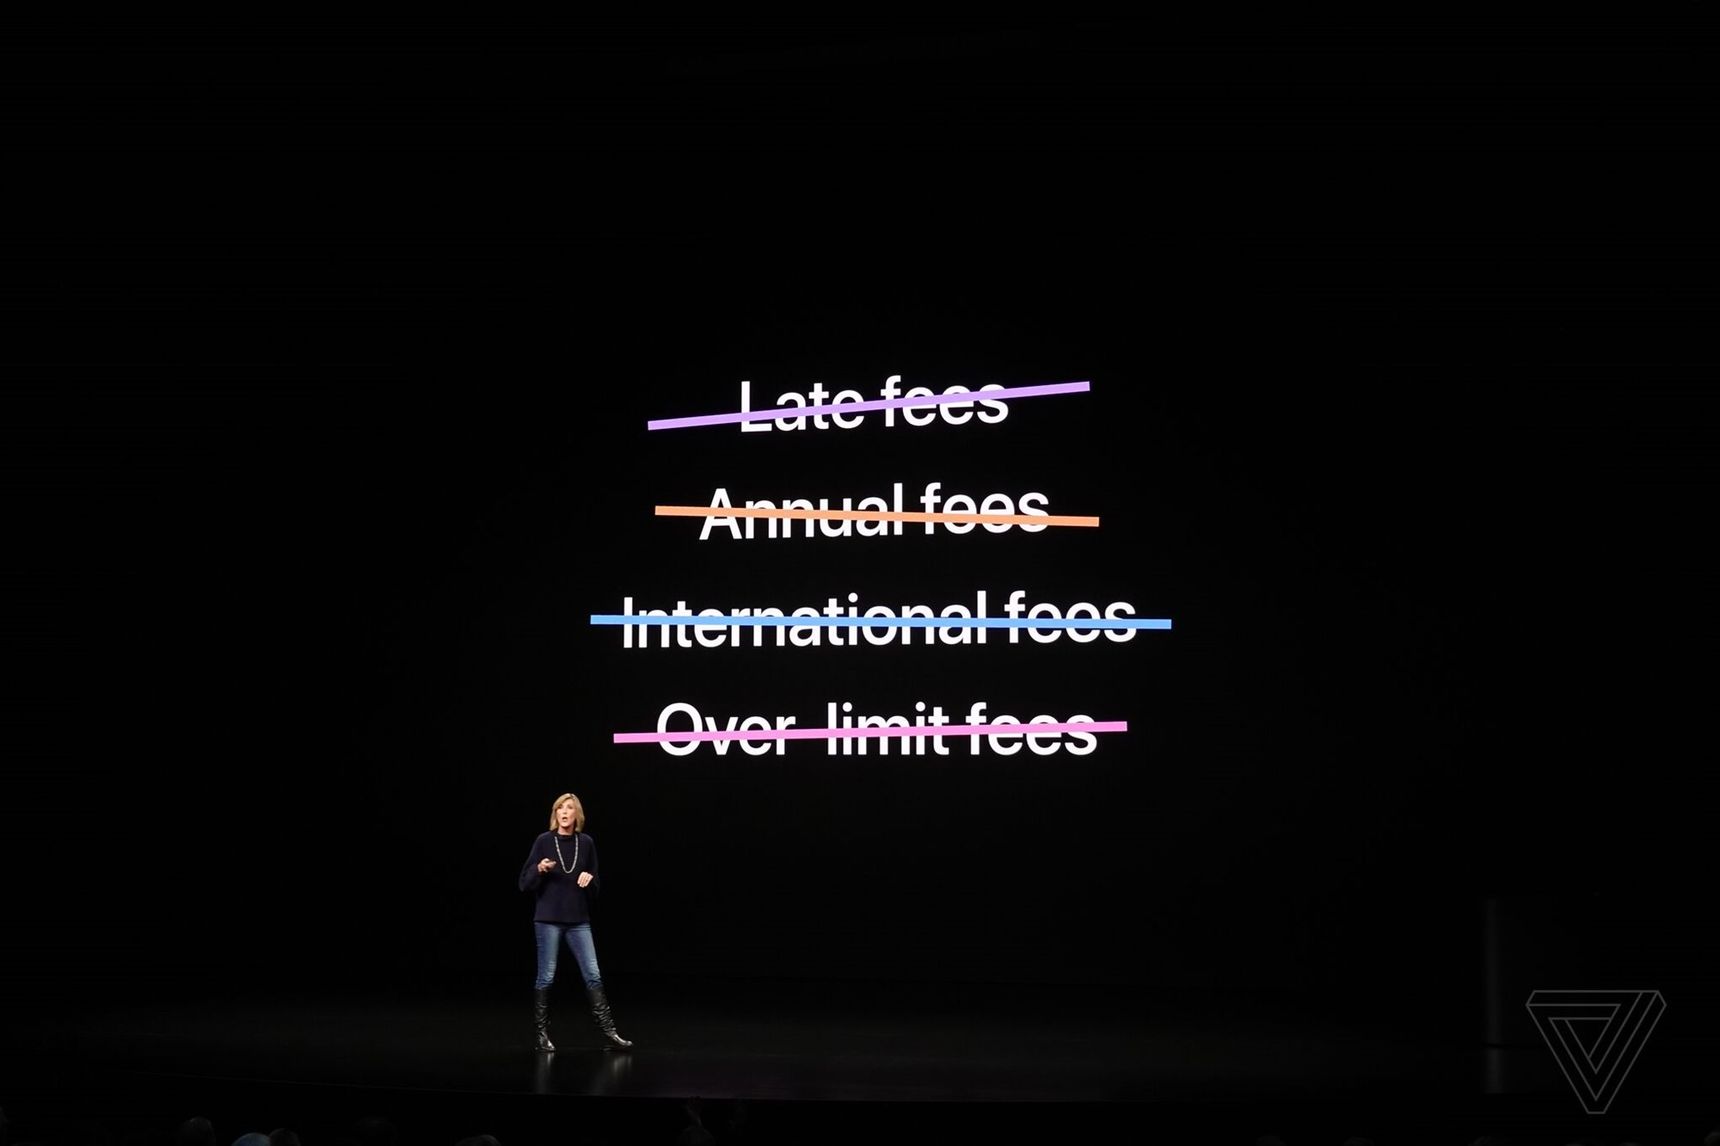 Tổng hợp sự kiện Apple vào khuya 25/03: Rất nhiều dịch vụ mới nhưng không có phần cứng nào cả!